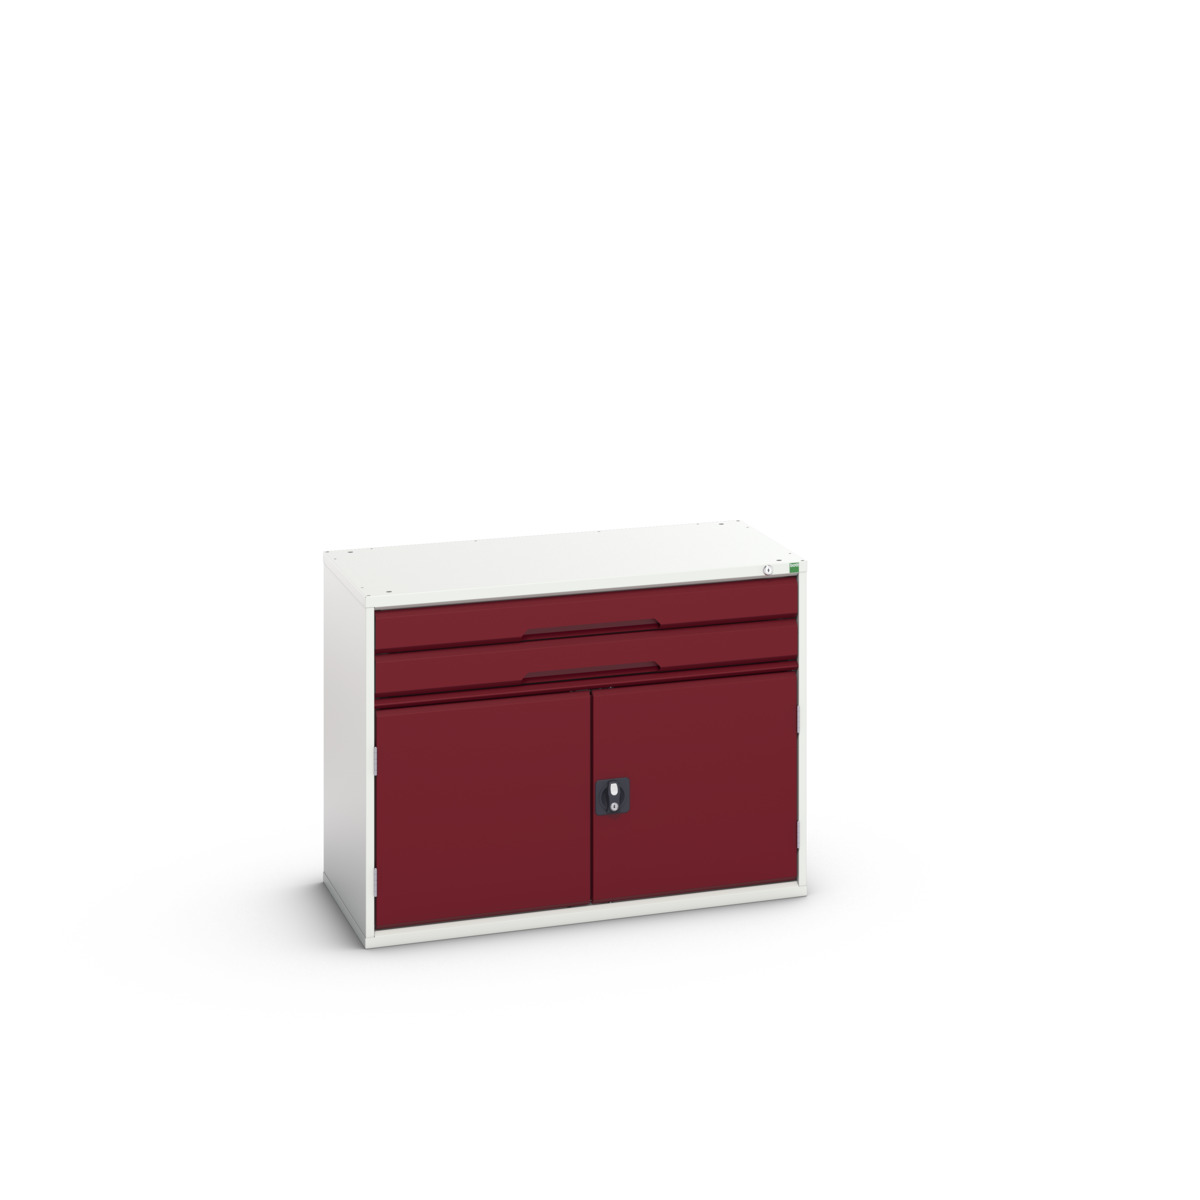 16925216.24 - verso drawer-door cabinet